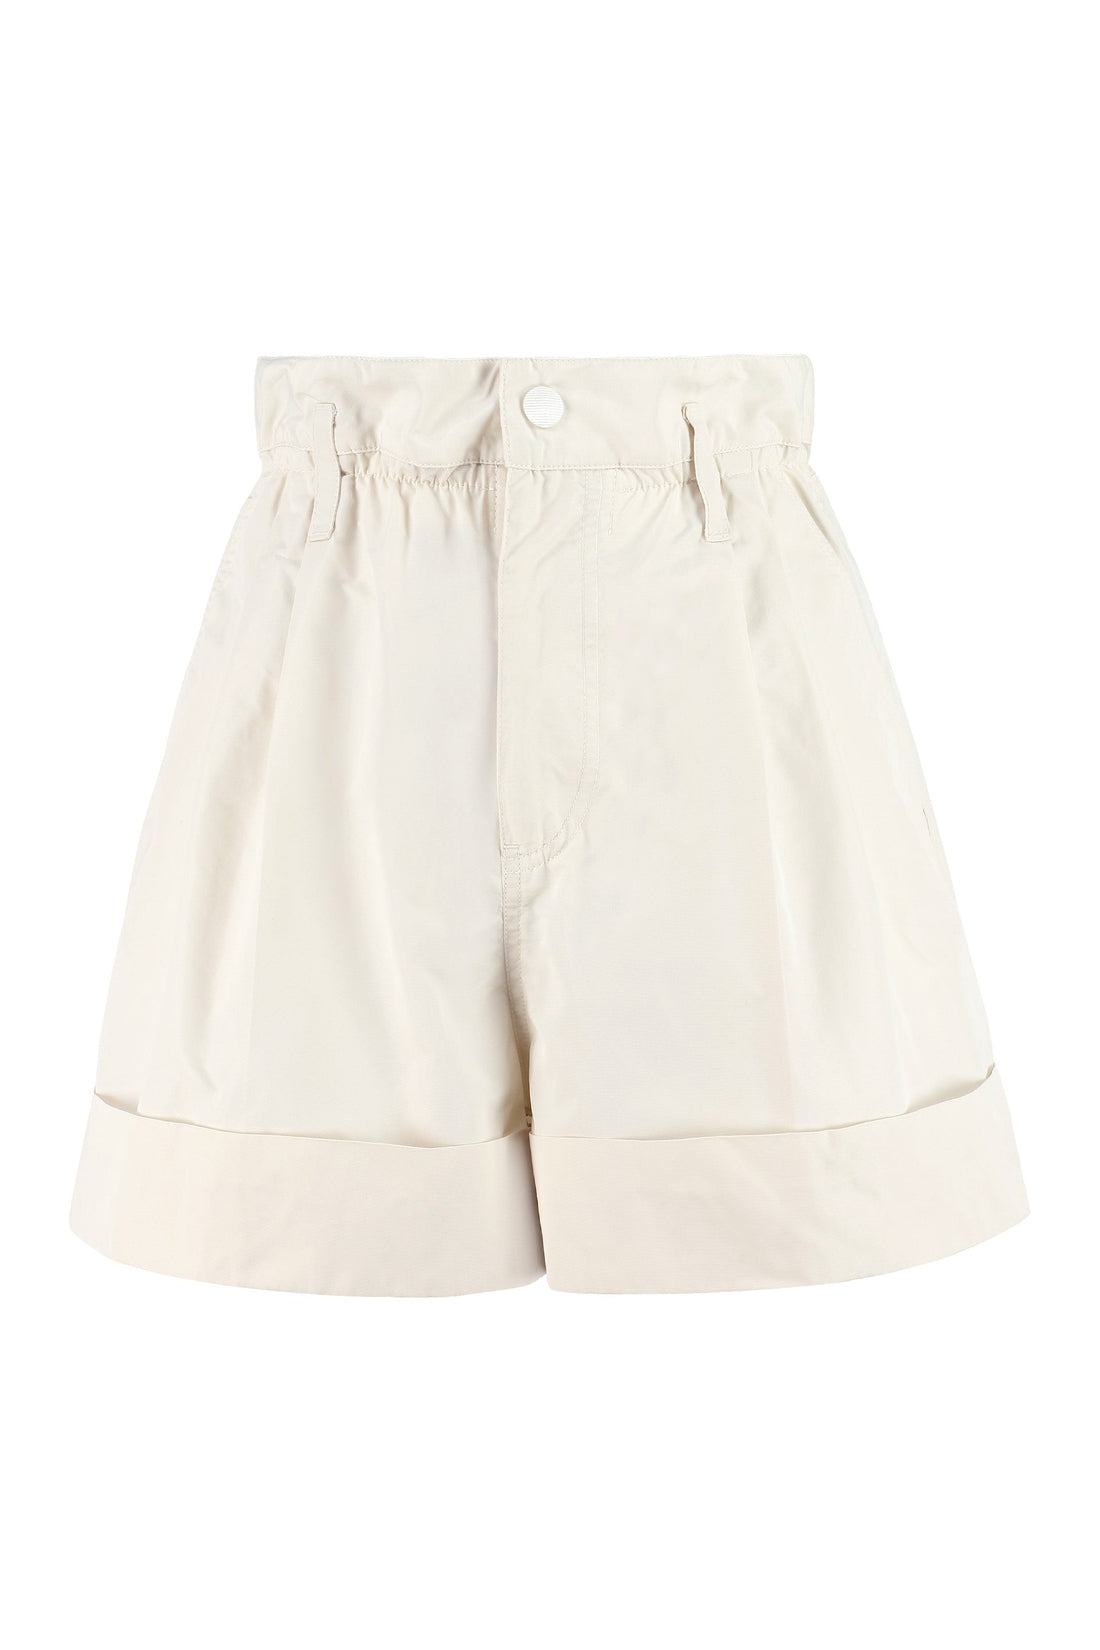 Moncler-OUTLET-SALE-Techno fabric shorts-ARCHIVIST